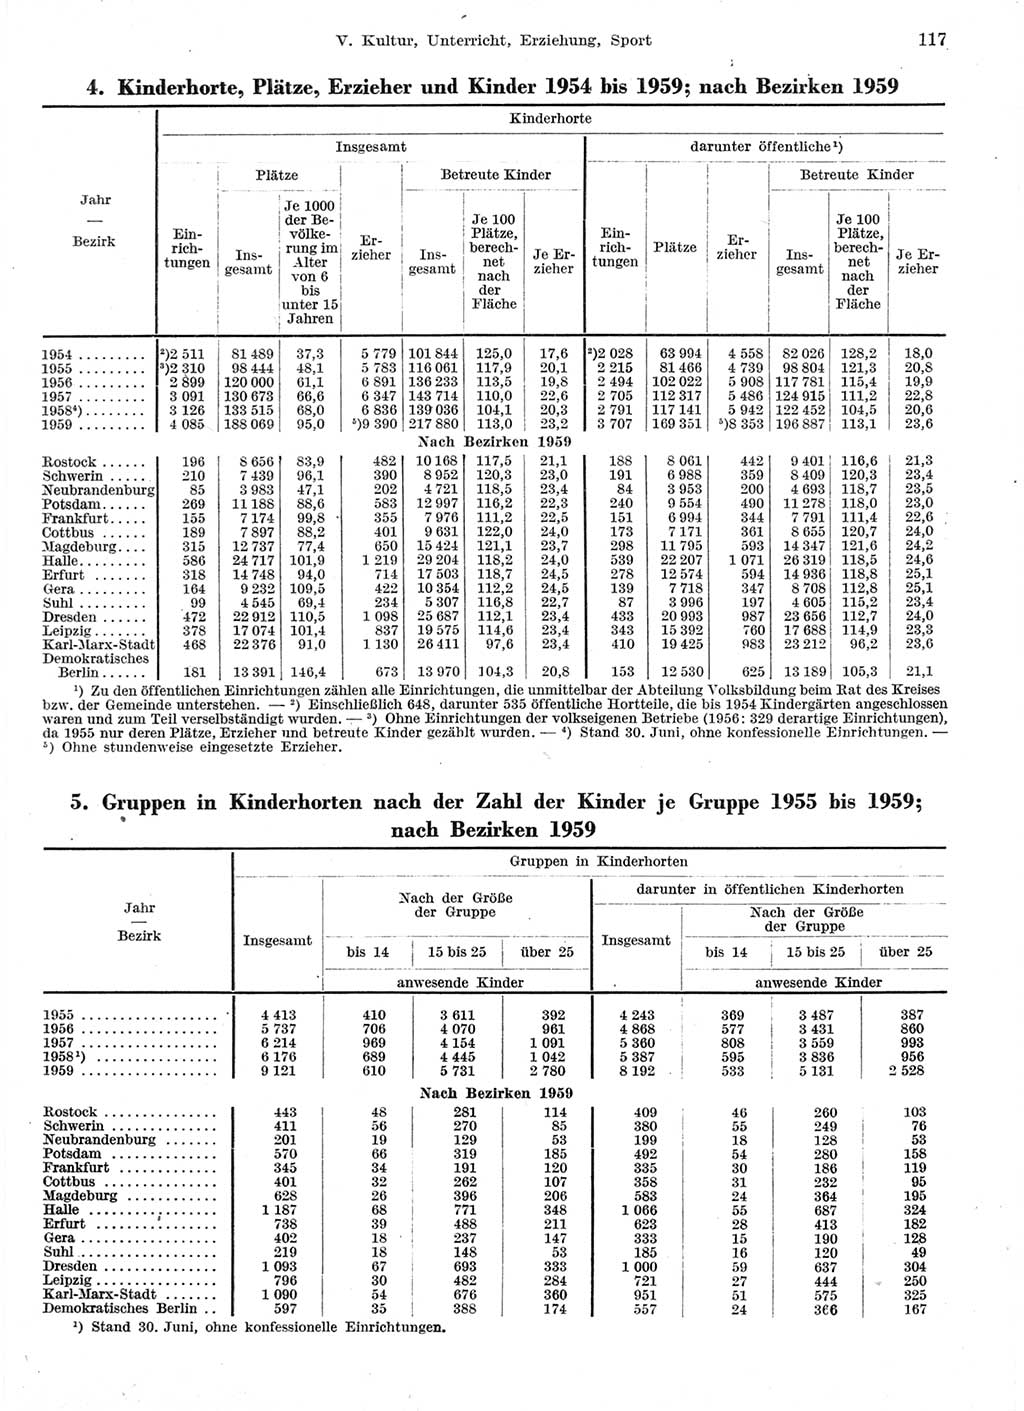 Statistisches Jahrbuch der Deutschen Demokratischen Republik (DDR) 1959, Seite 117 (Stat. Jb. DDR 1959, S. 117)